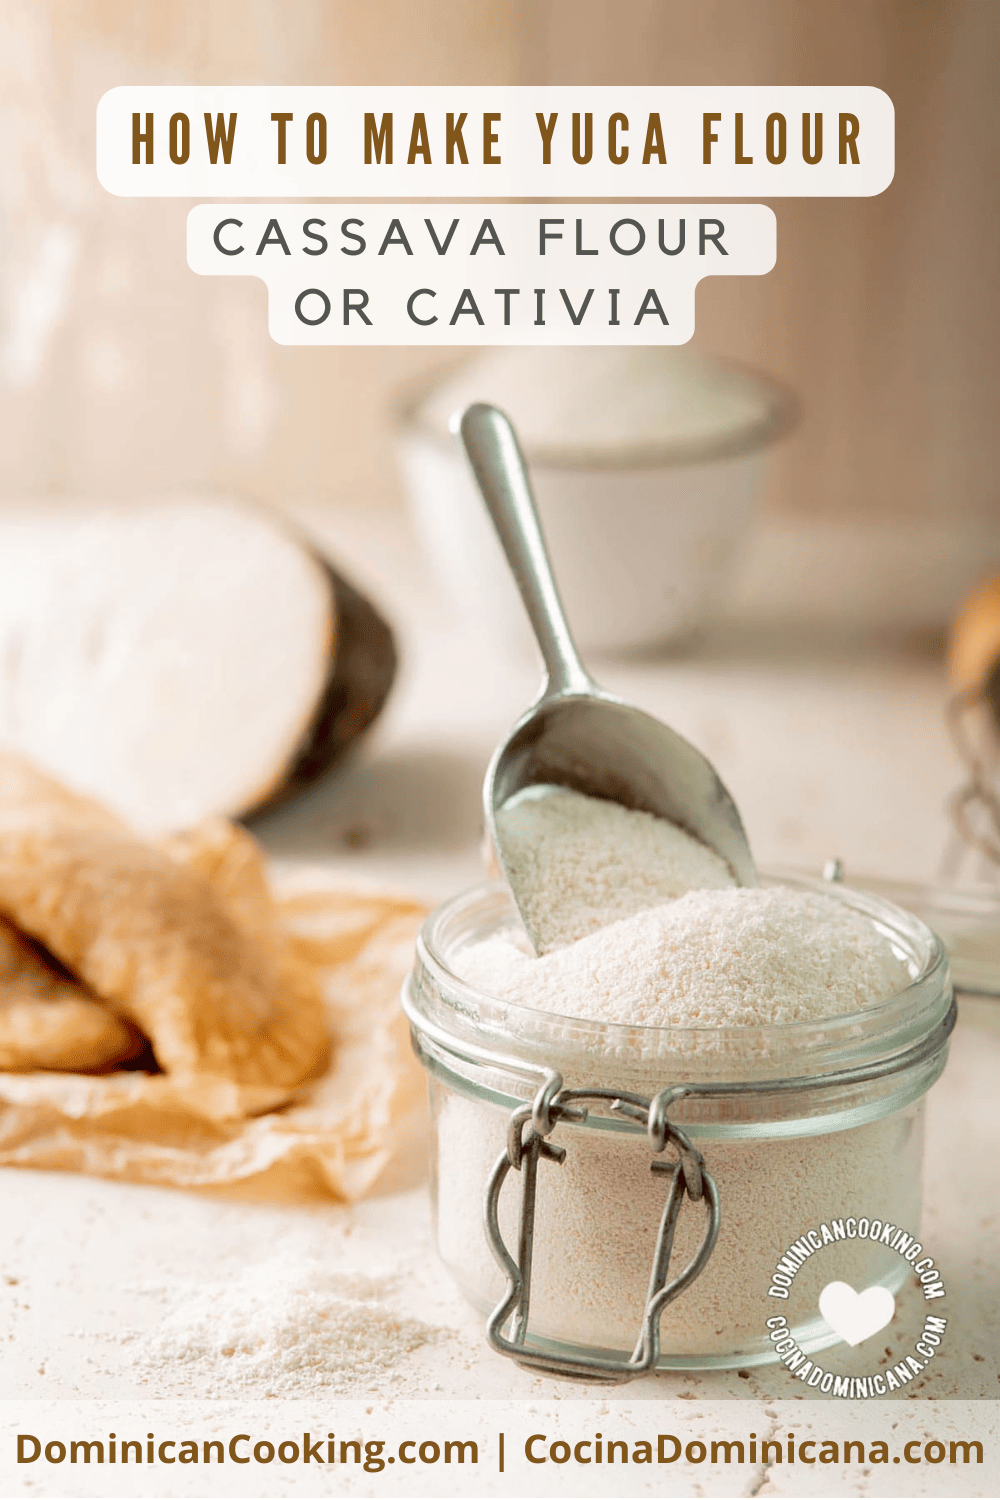 How to make cassava flour.